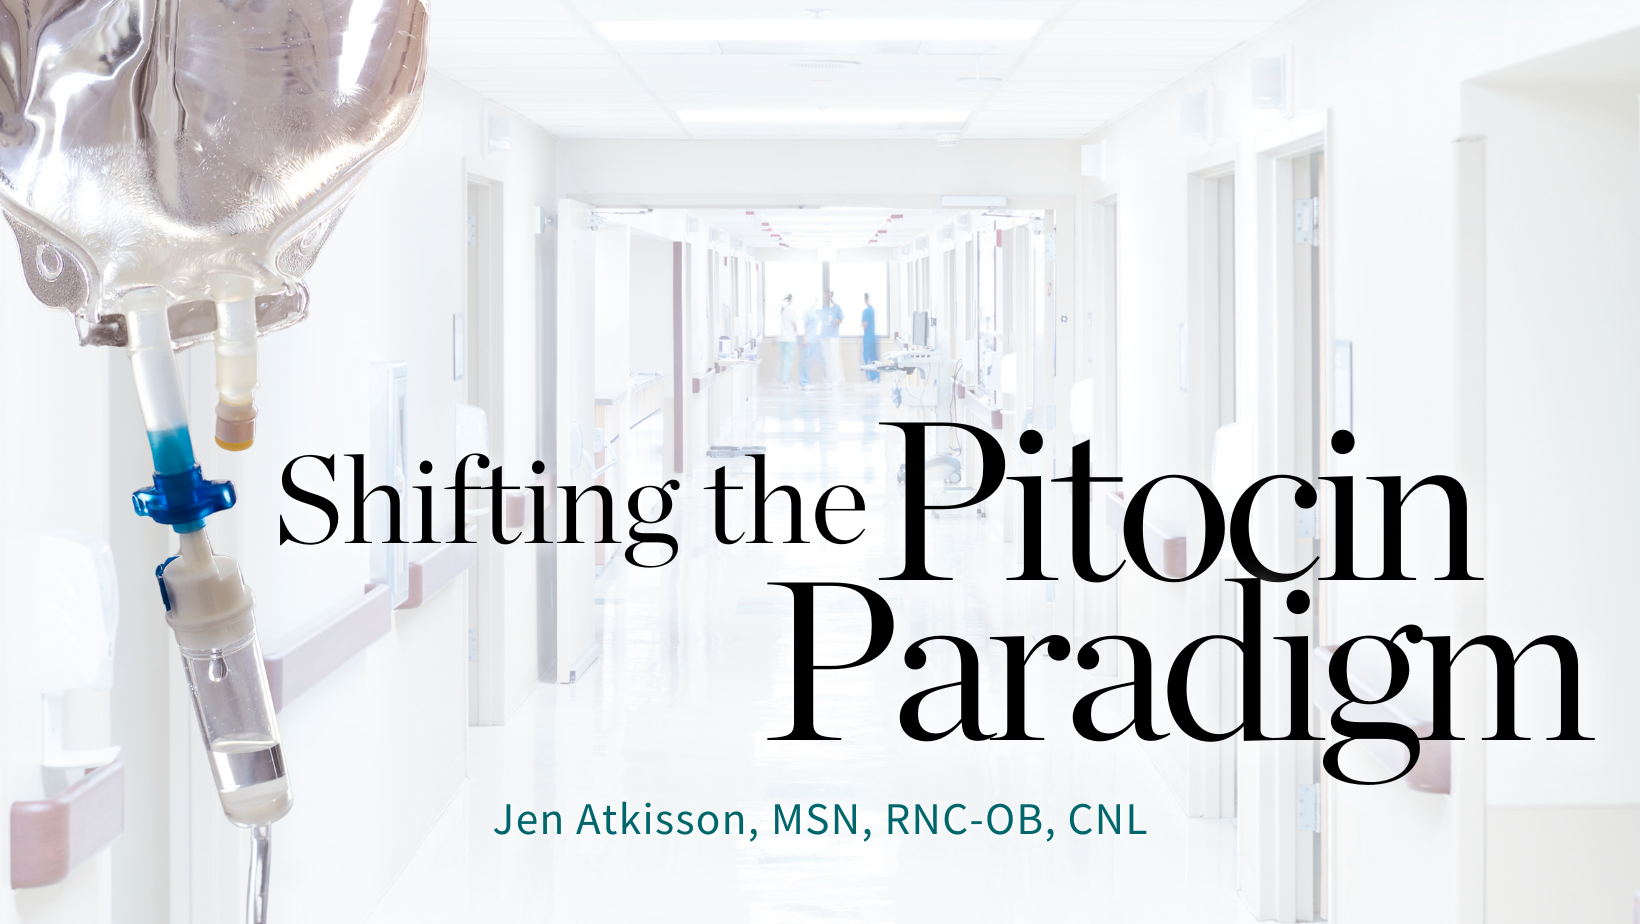 Shifting the Pitocin Paradigm